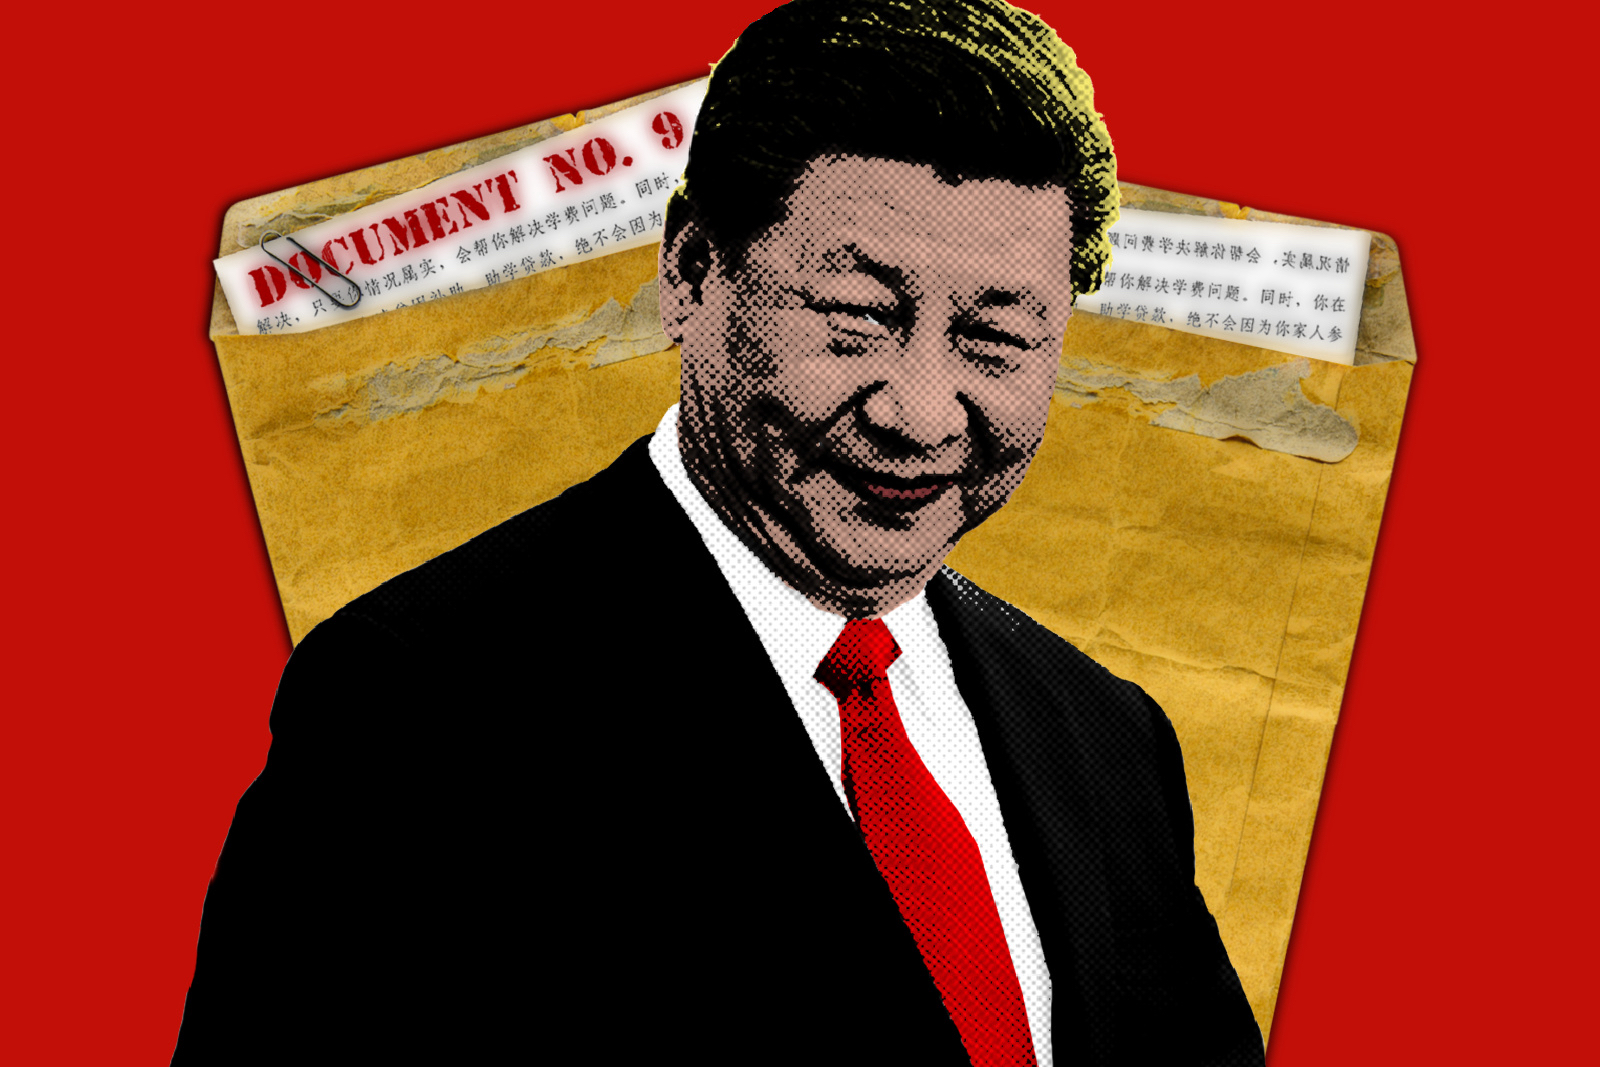 Xi Jinping Document No. 9